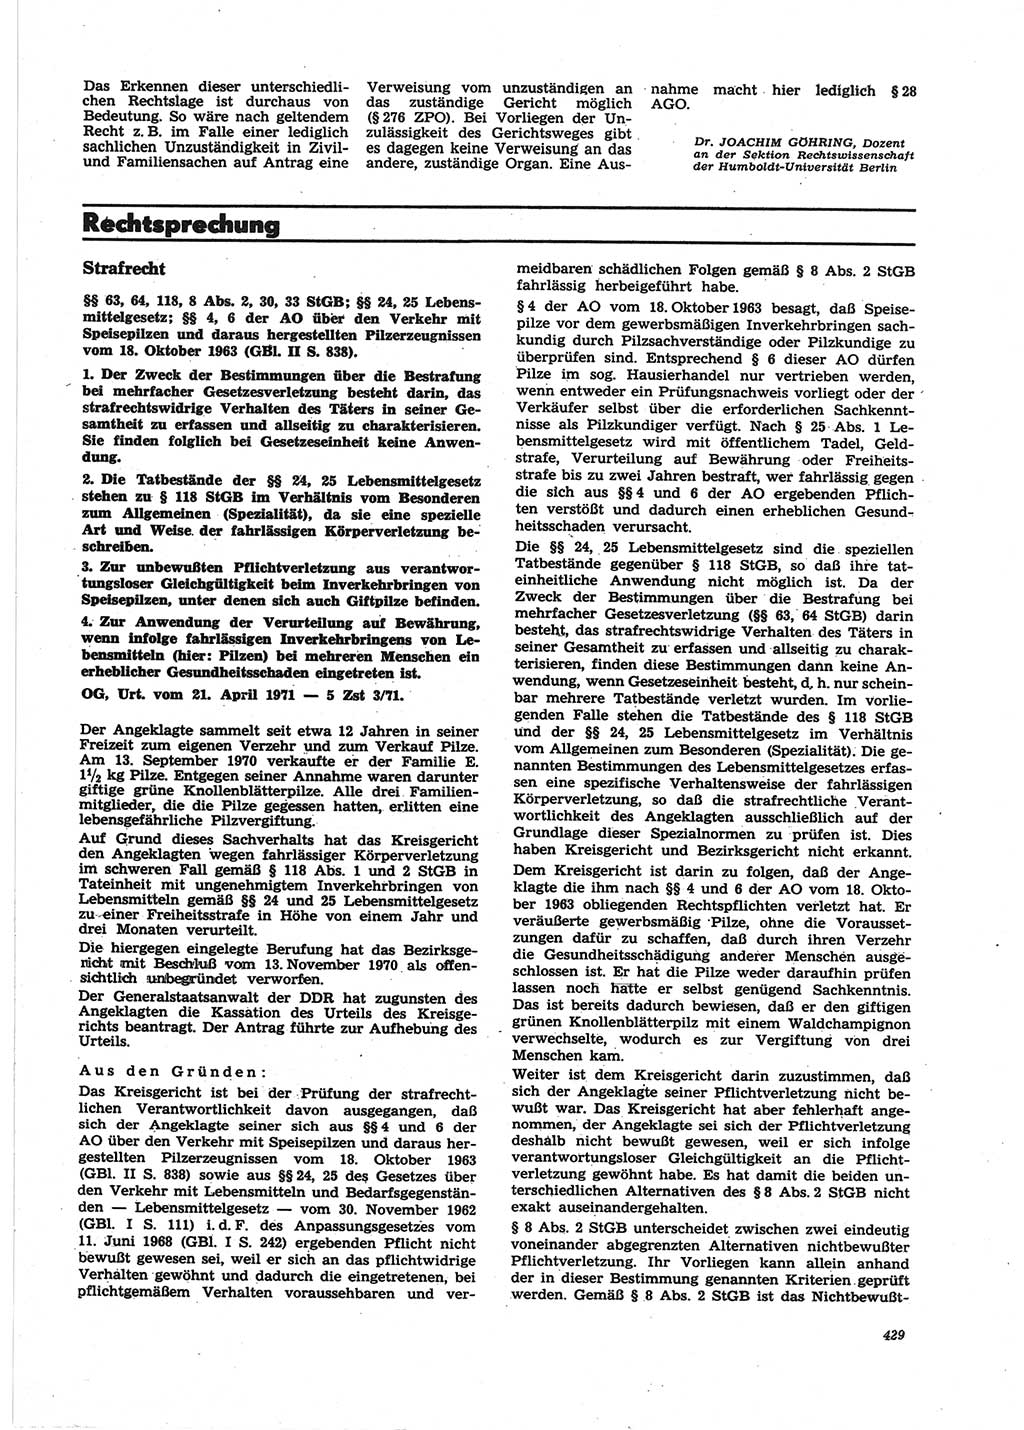 Neue Justiz (NJ), Zeitschrift für Recht und Rechtswissenschaft [Deutsche Demokratische Republik (DDR)], 25. Jahrgang 1971, Seite 429 (NJ DDR 1971, S. 429)